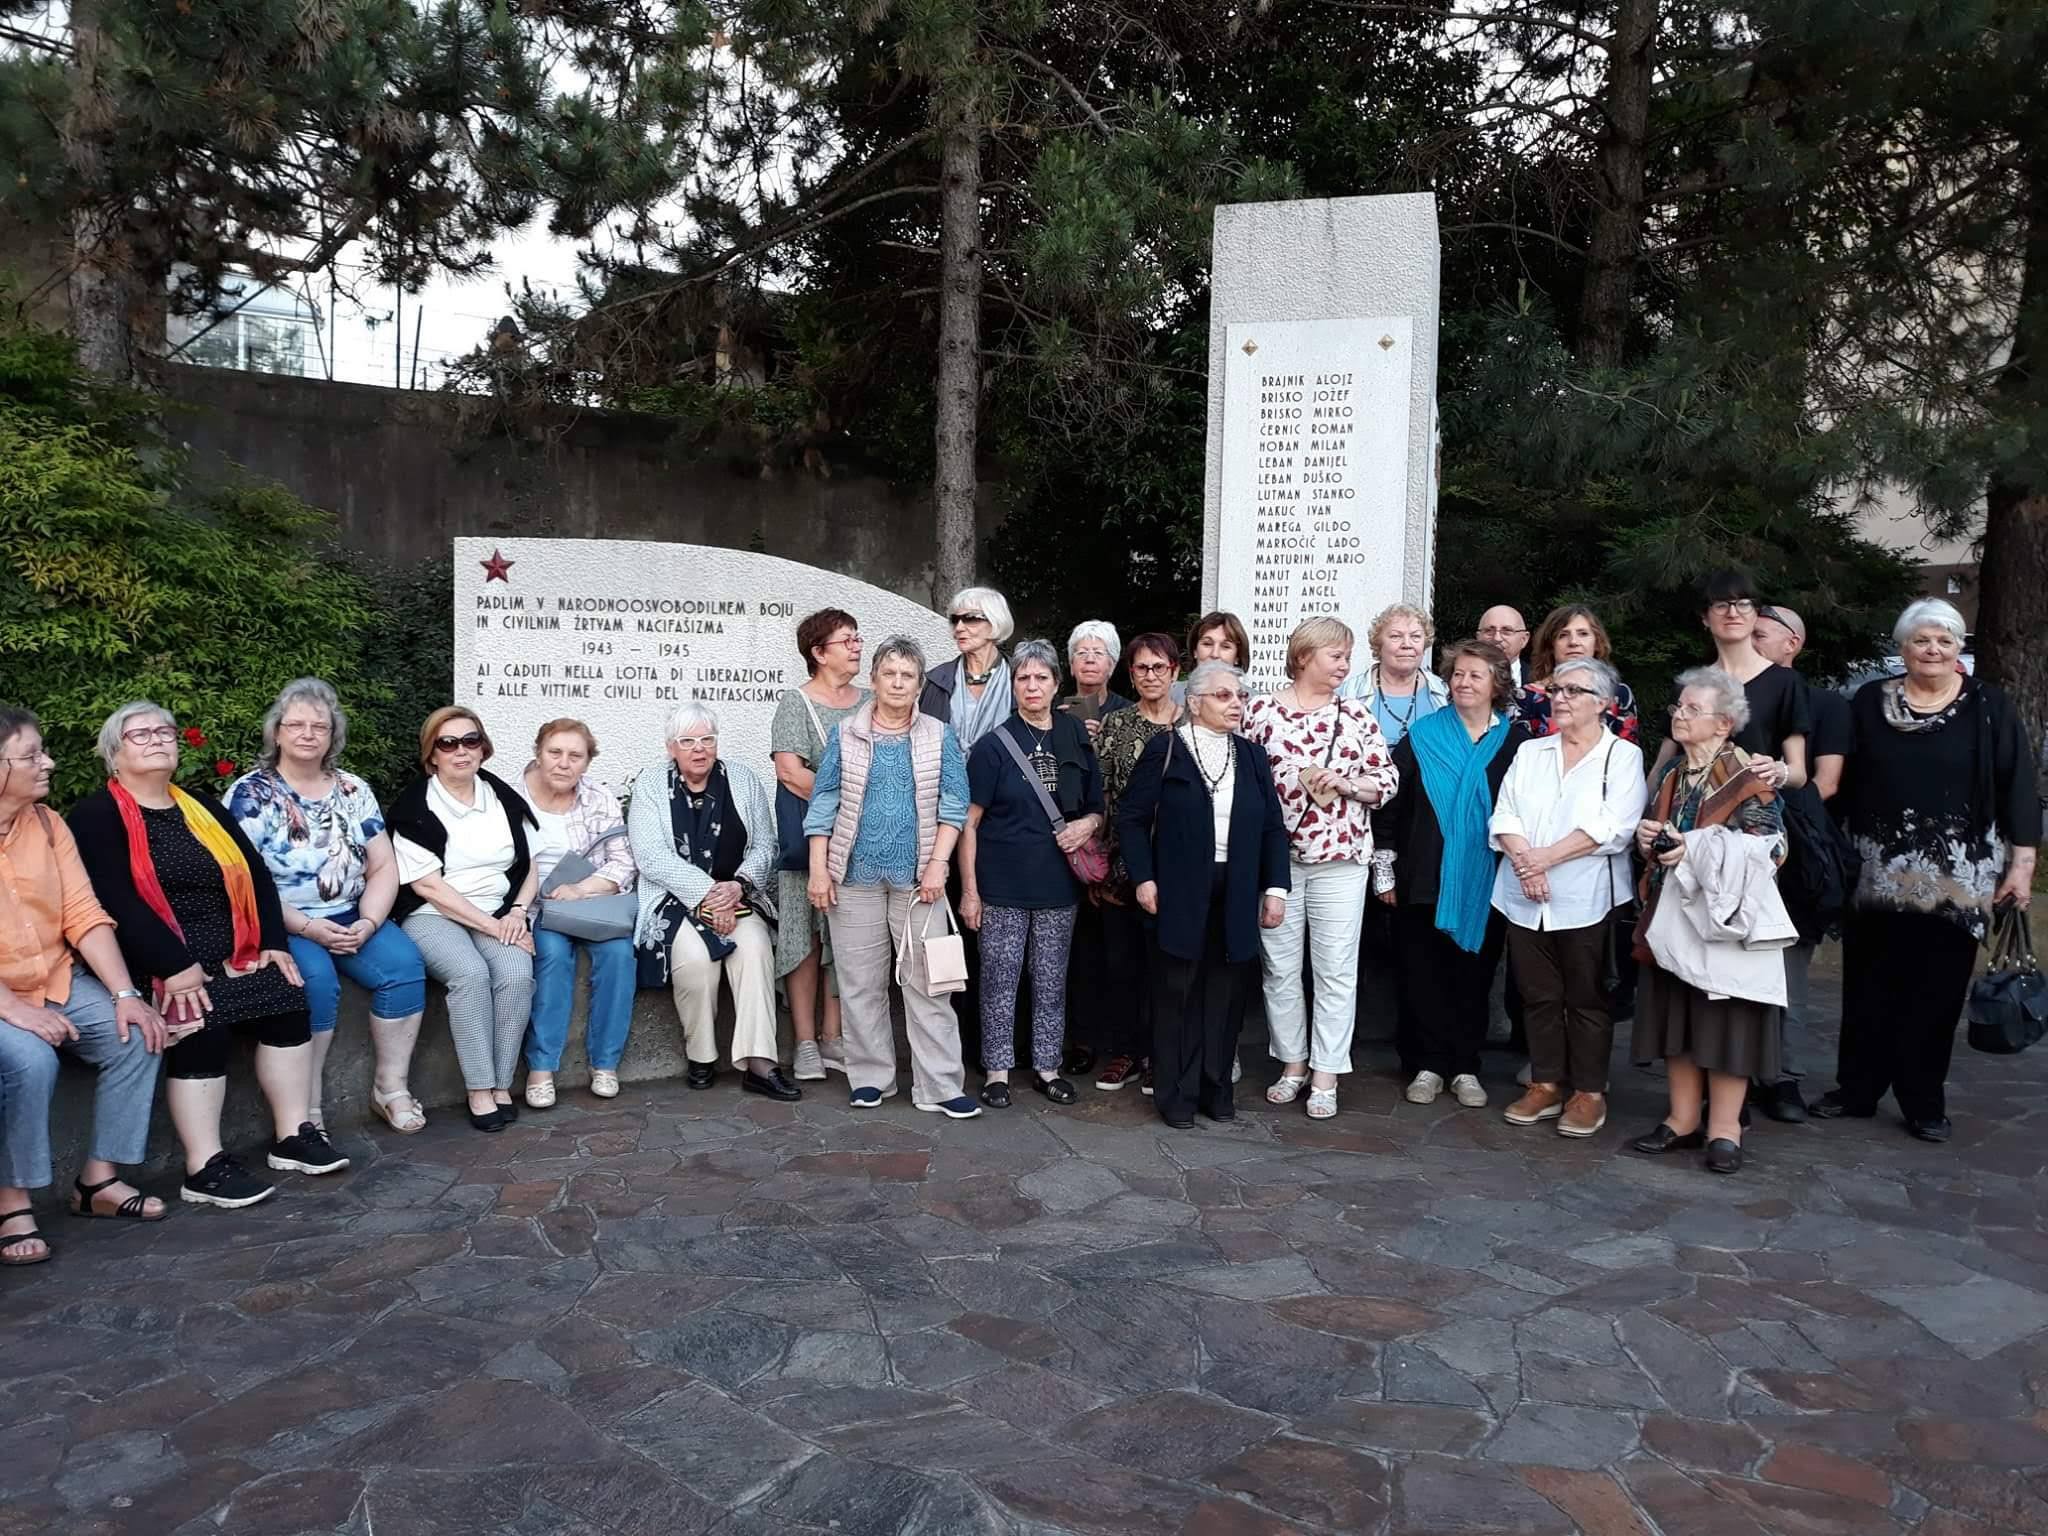 Mitglieder des IRK, Goriza 2019, Foto: Bochat